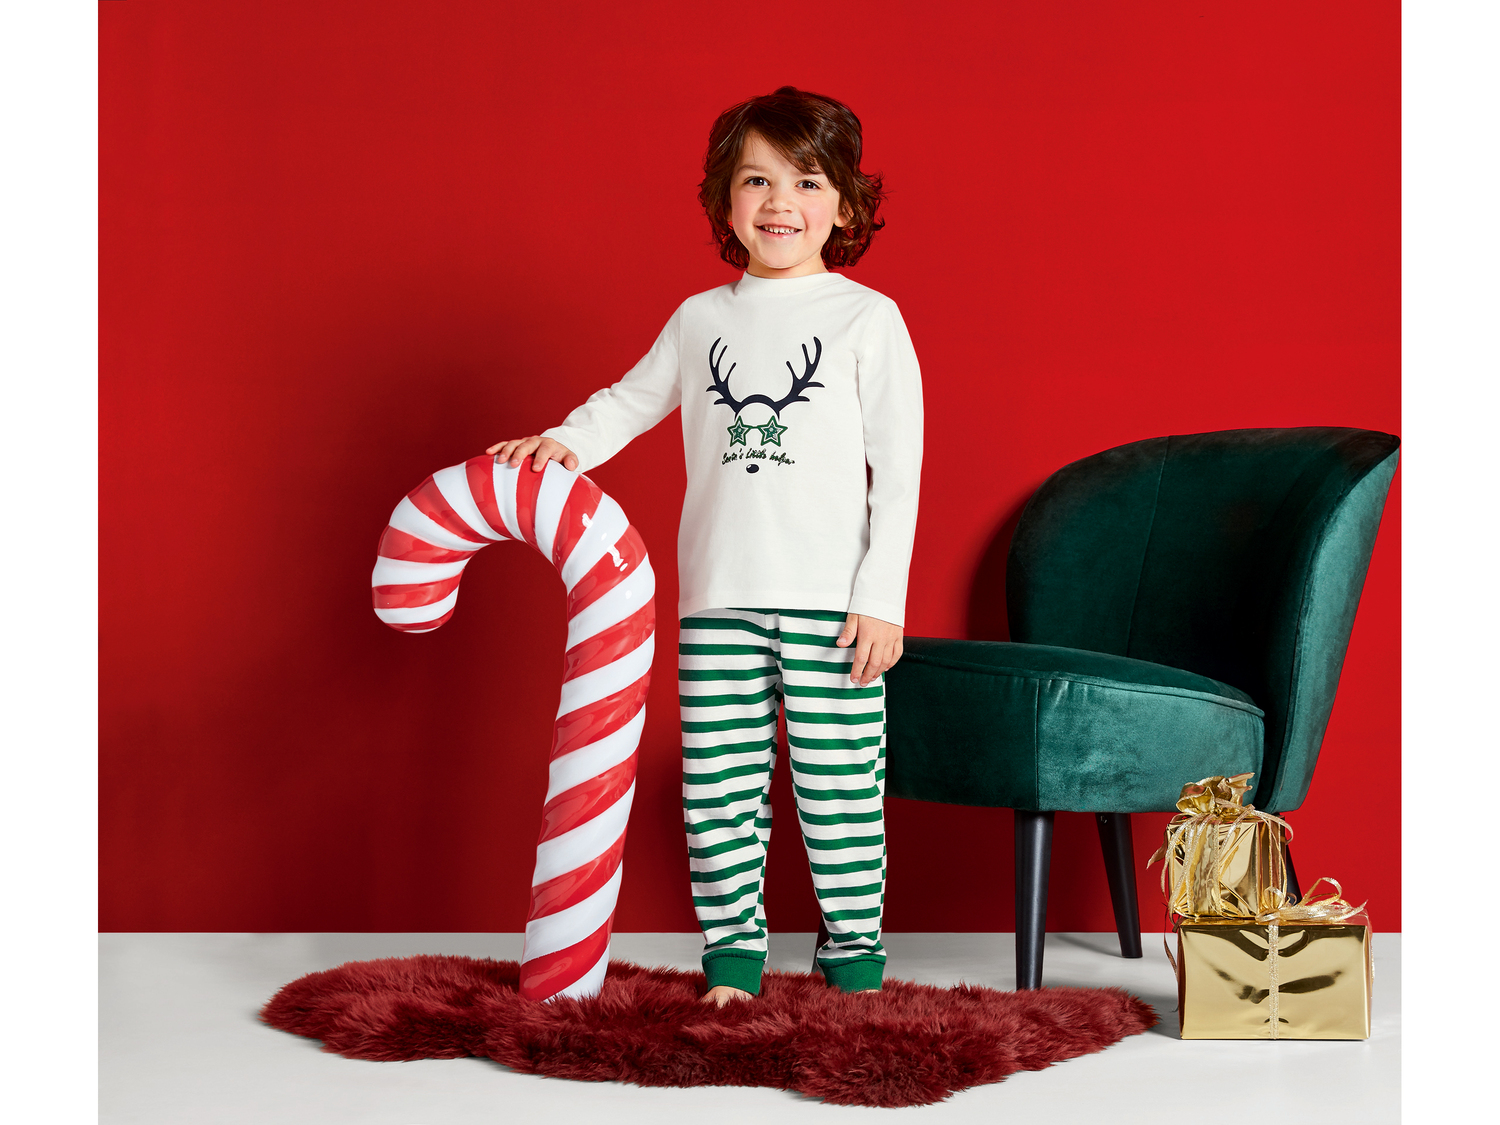 Piżama dziecięca Lupilu, cena 19,99 PLN 
- 100% bawełny
- rozmiary: 98-116
Dostępne ...